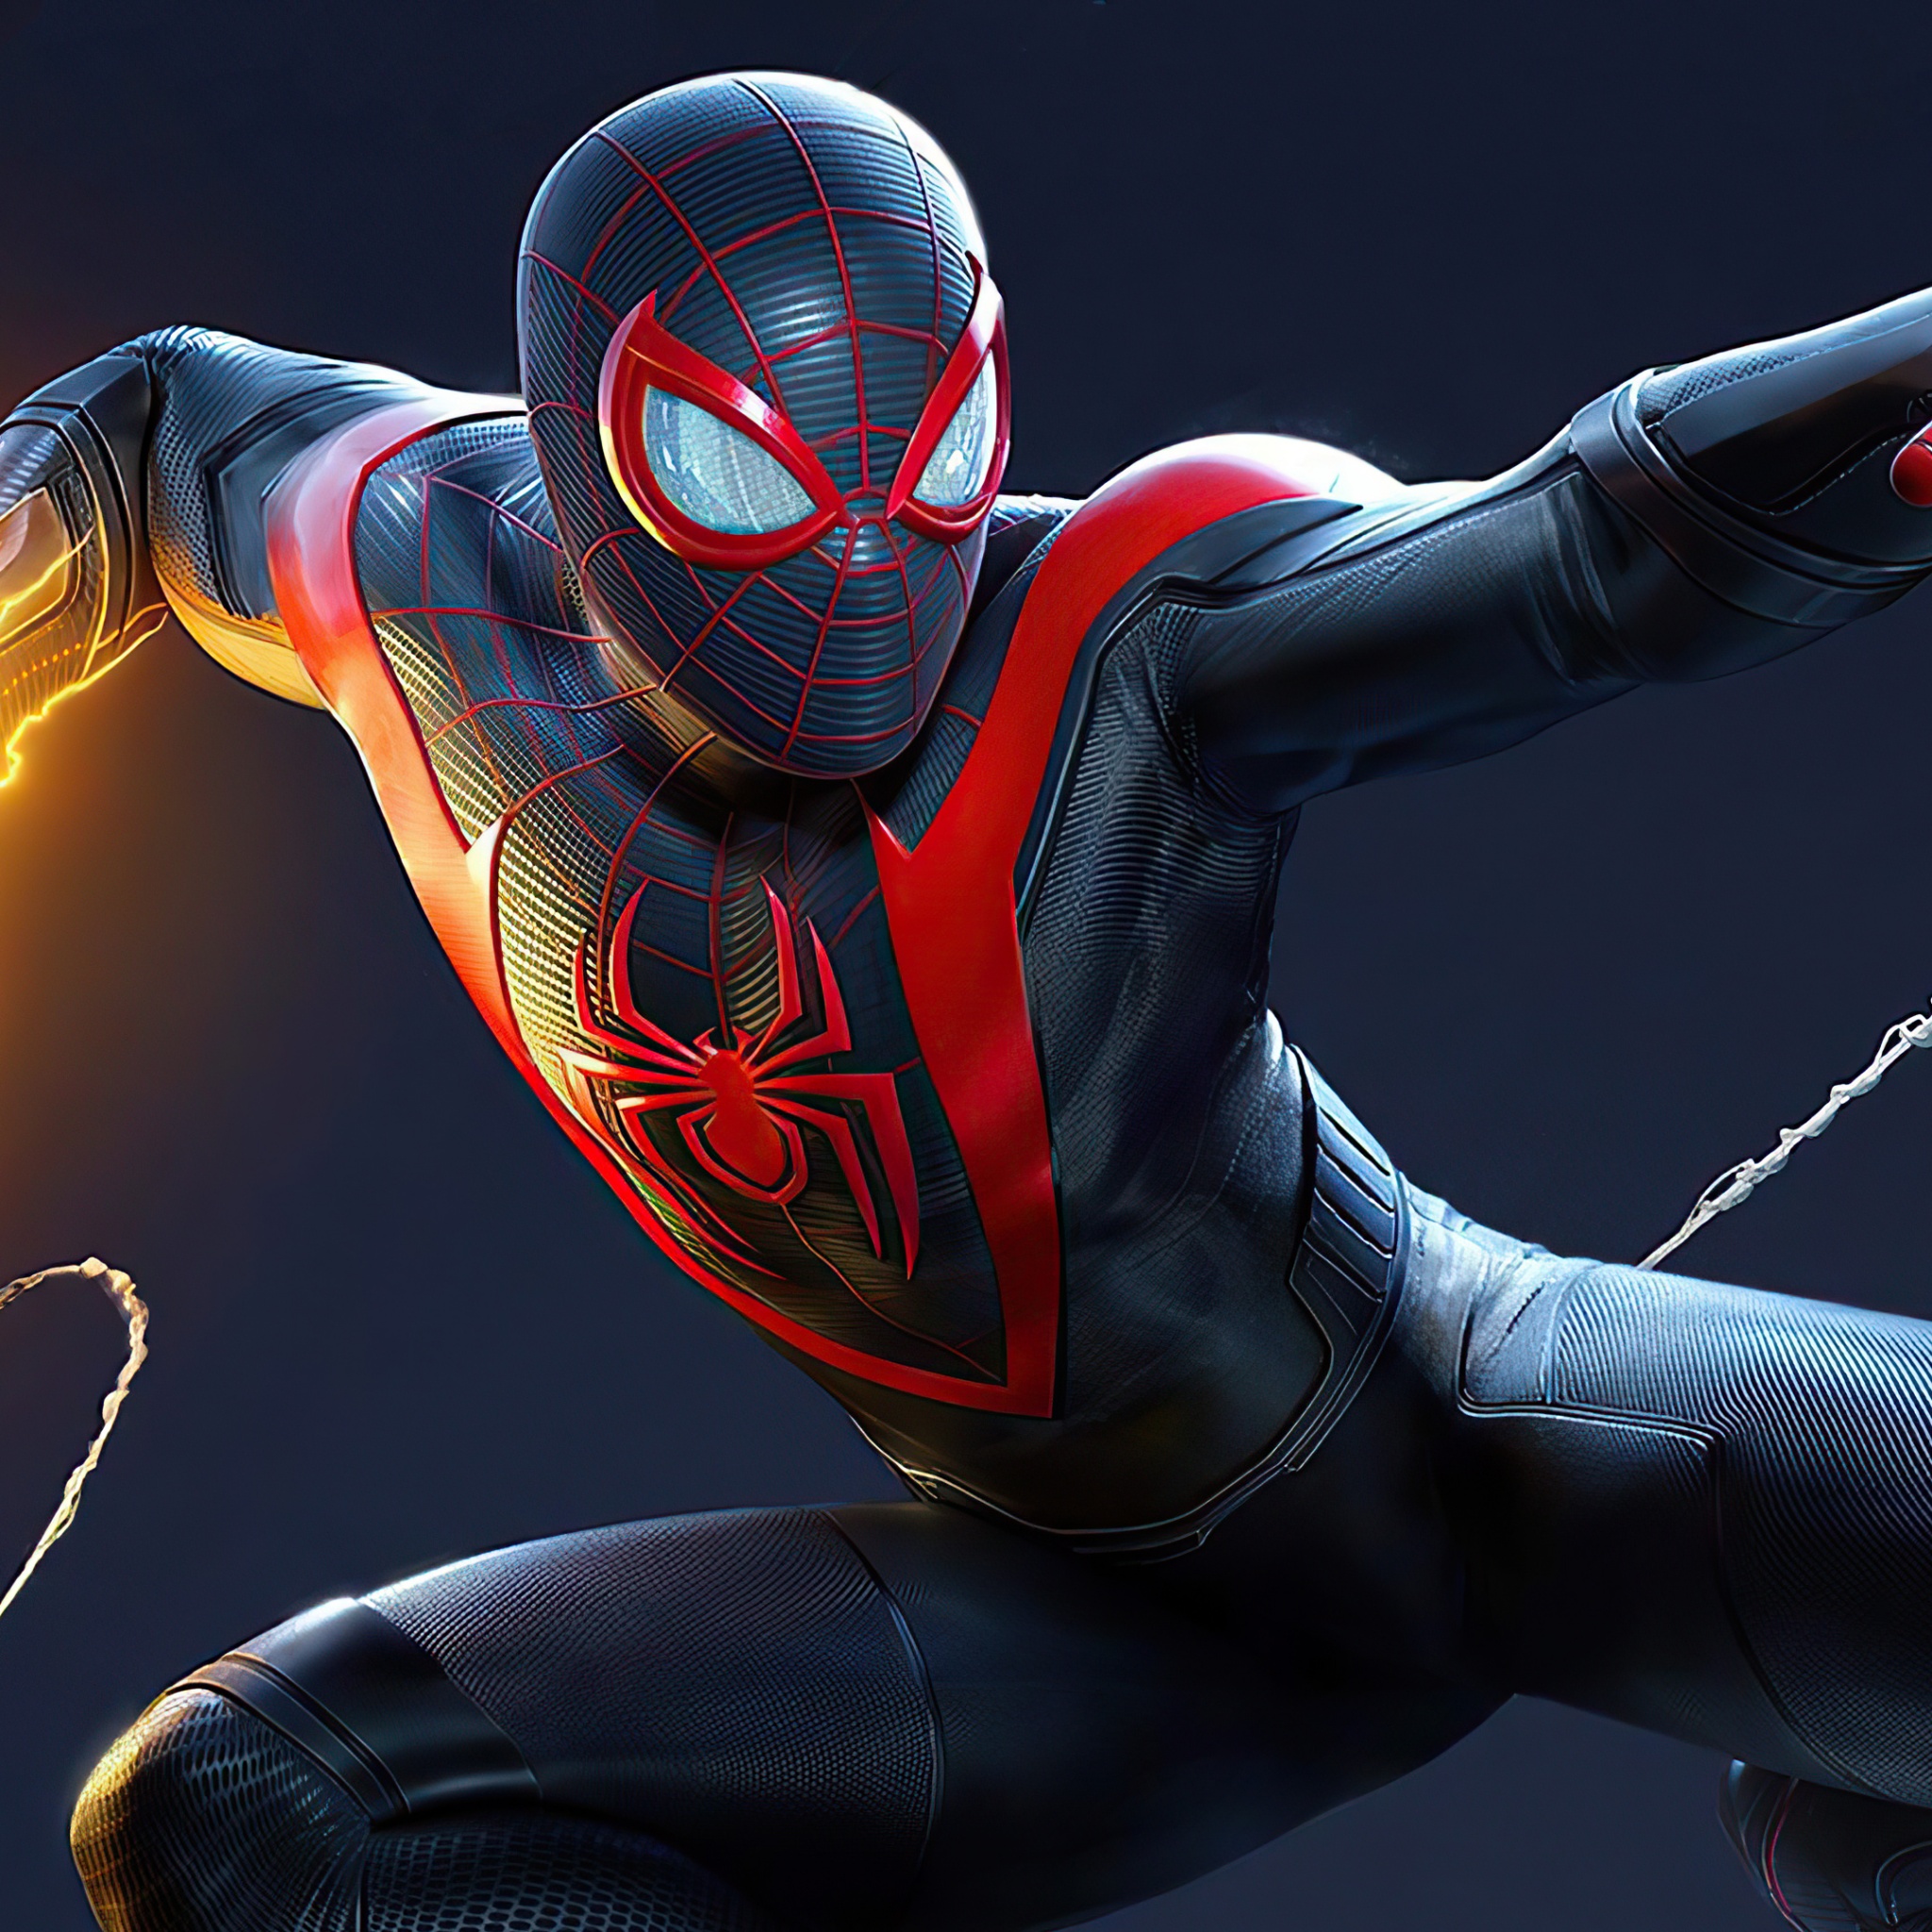 Marvel's Spider-Man 2 4K Wallpaper, PlayStation 5, 2021 ...